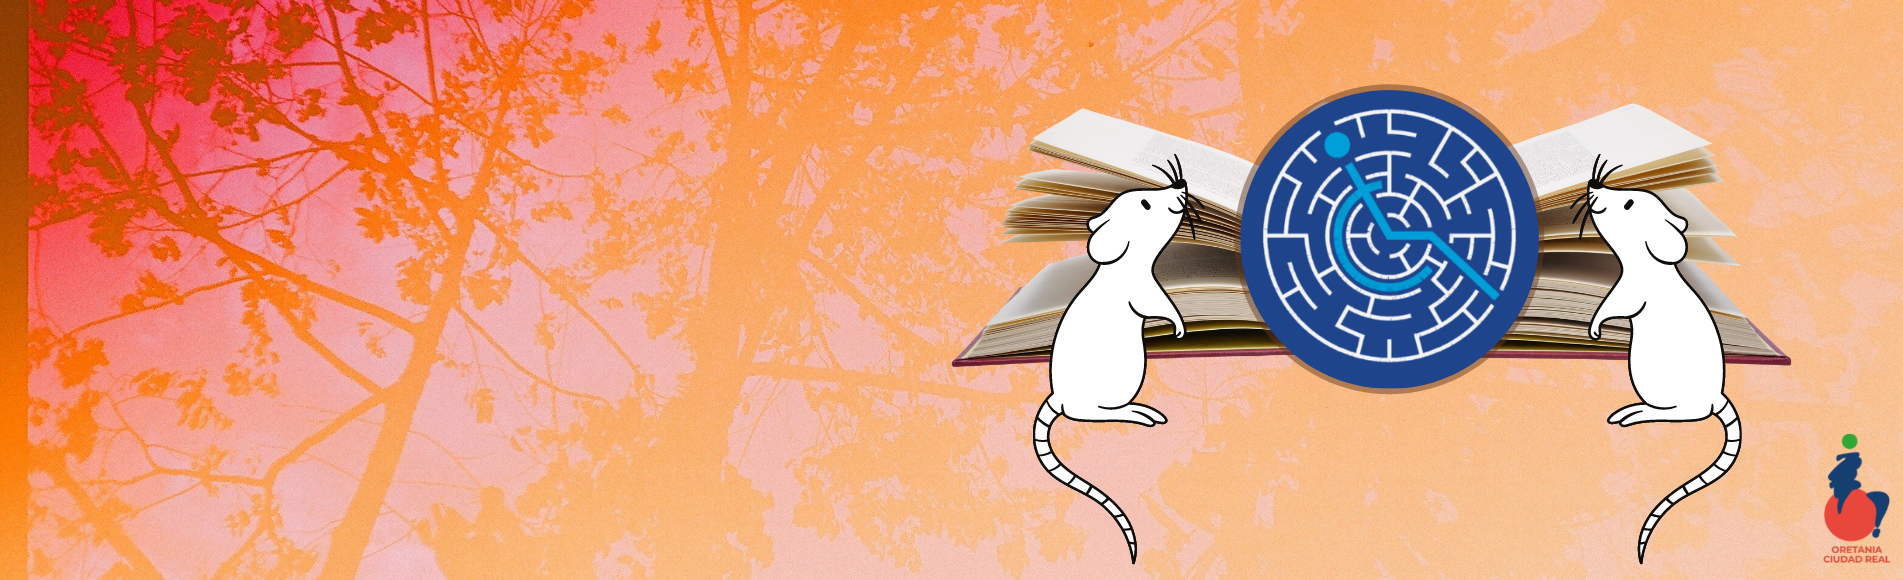 ratones con un libro y direcciones de donde comprar el libro